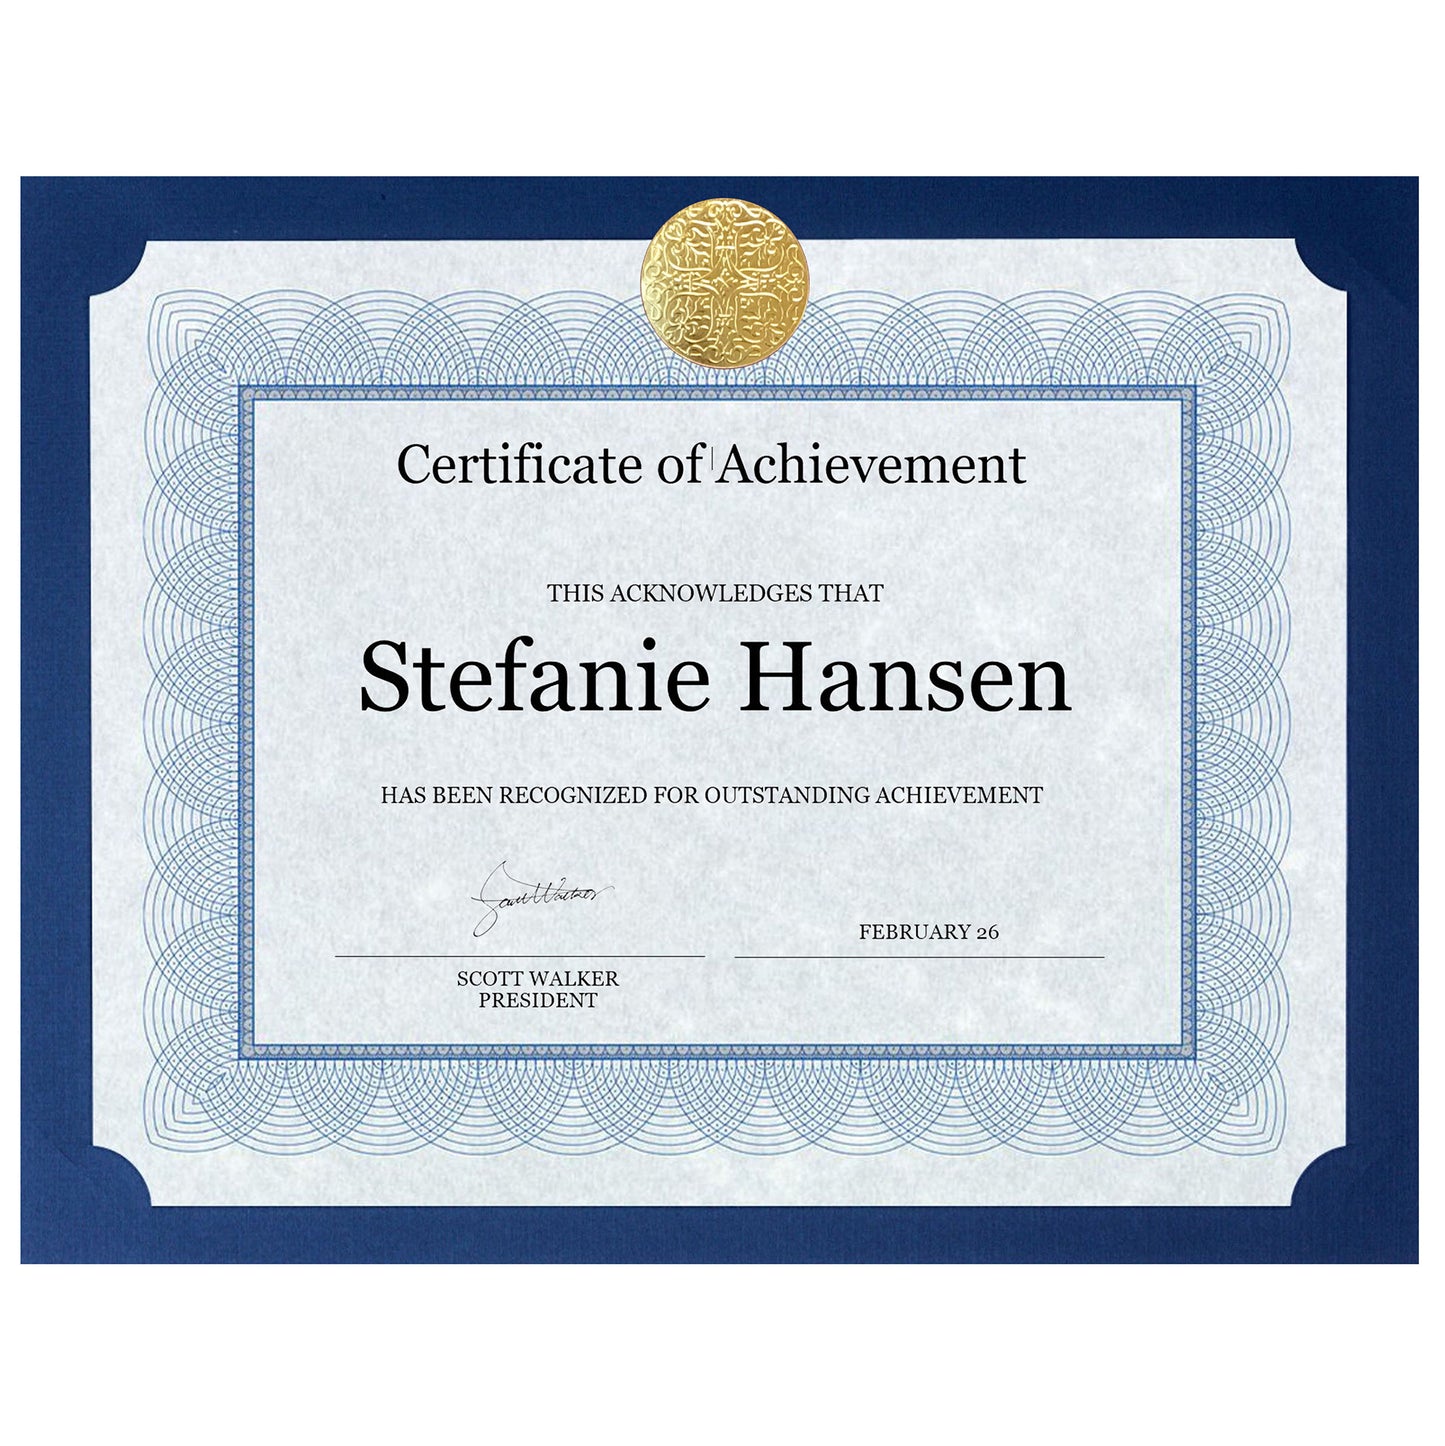 St. James® Elite™ Medallion Presentation Cards/Certificate Holder, Navy with Gold Medallion, Pack of 25